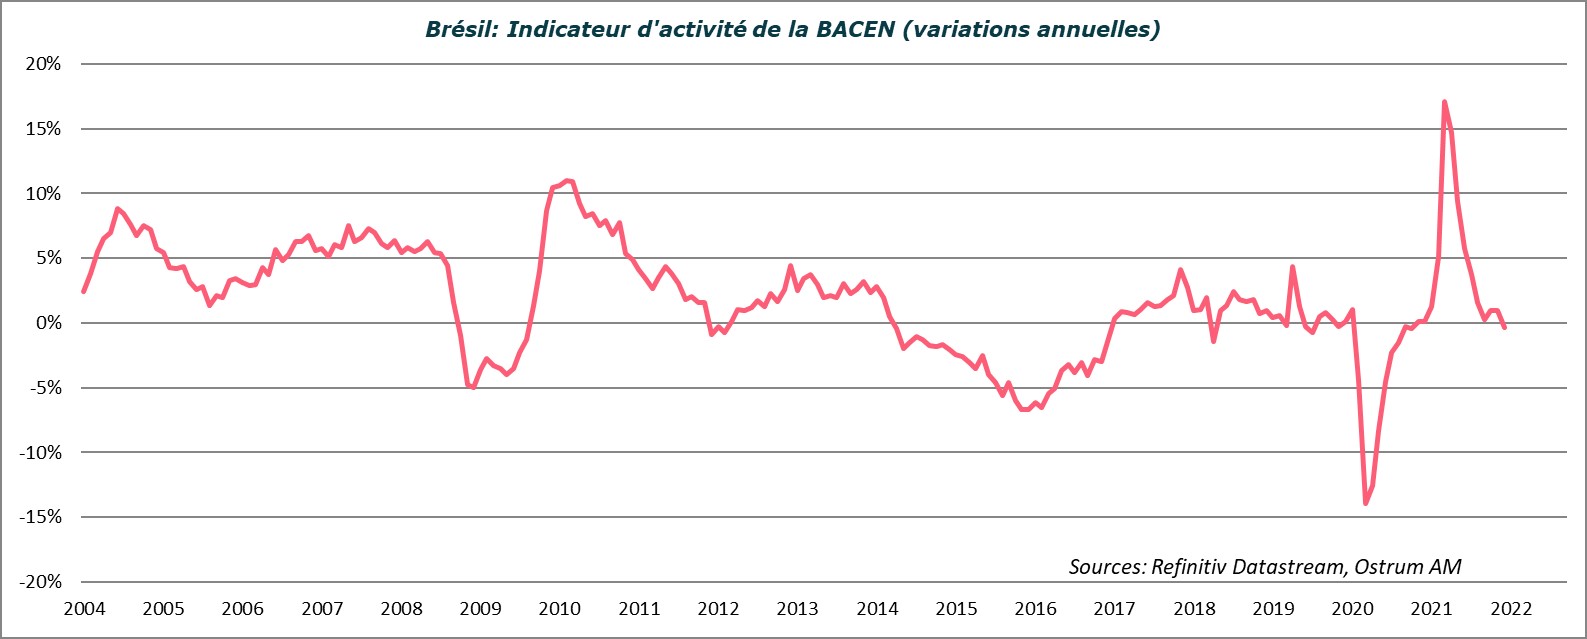 bresil-indicateur-d-activite-de-la-bacen-variations-annuelles